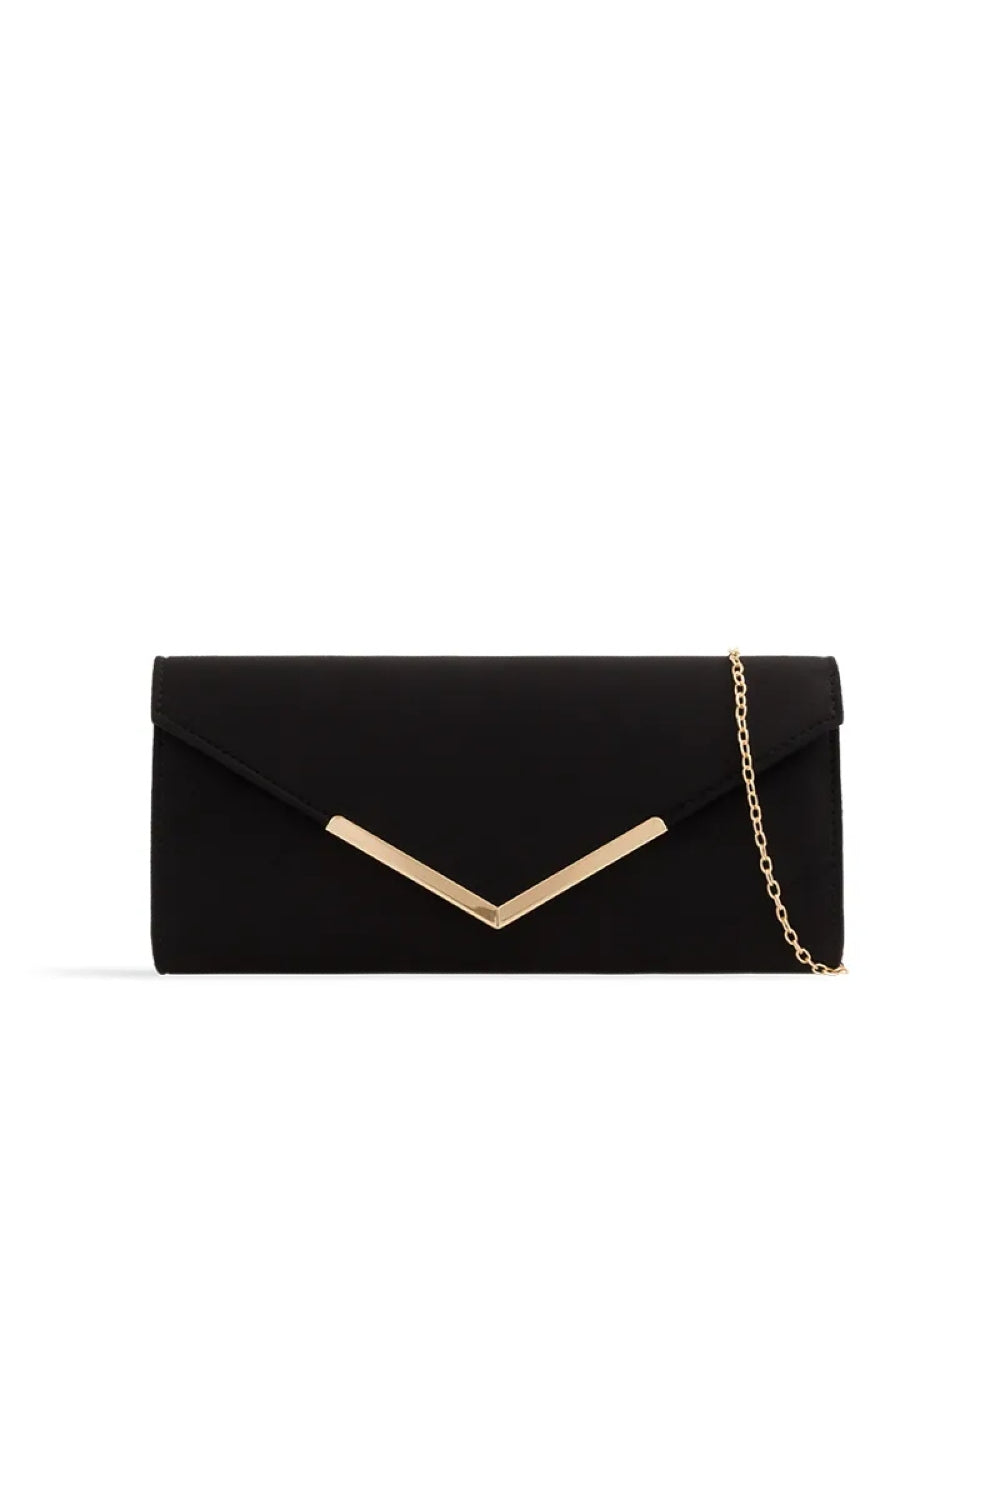 Black Suede Envelope Clutch Bag